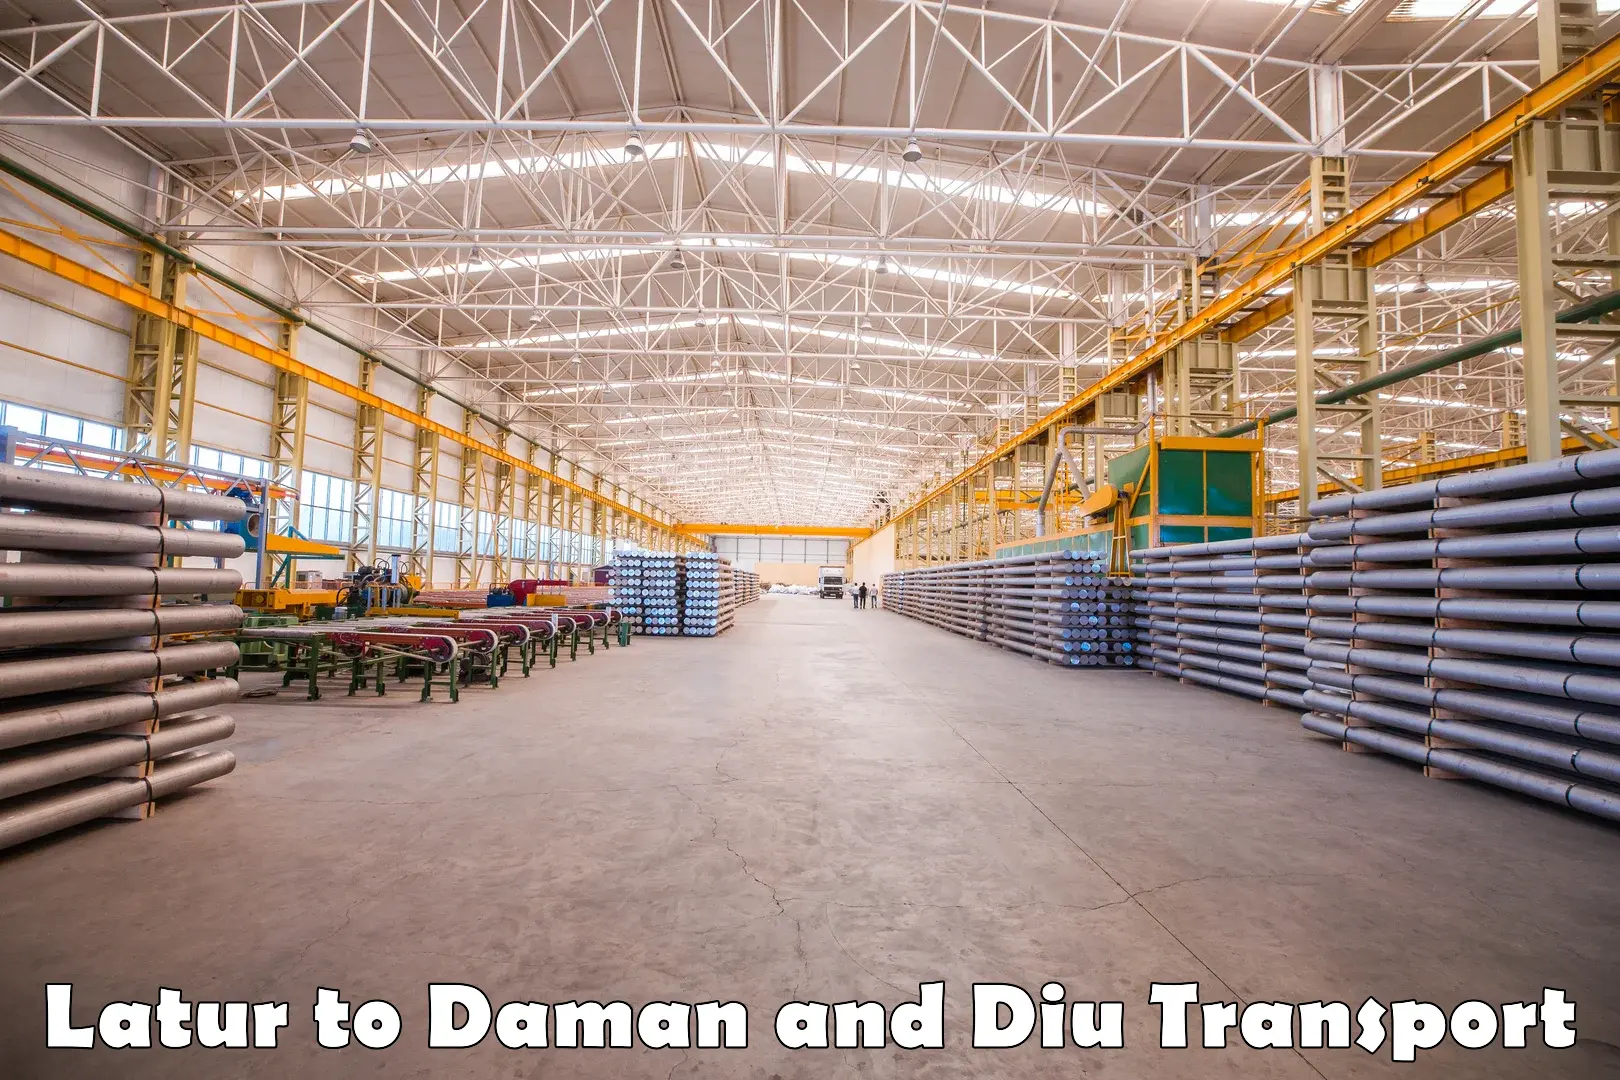 Logistics transportation services Latur to Daman and Diu